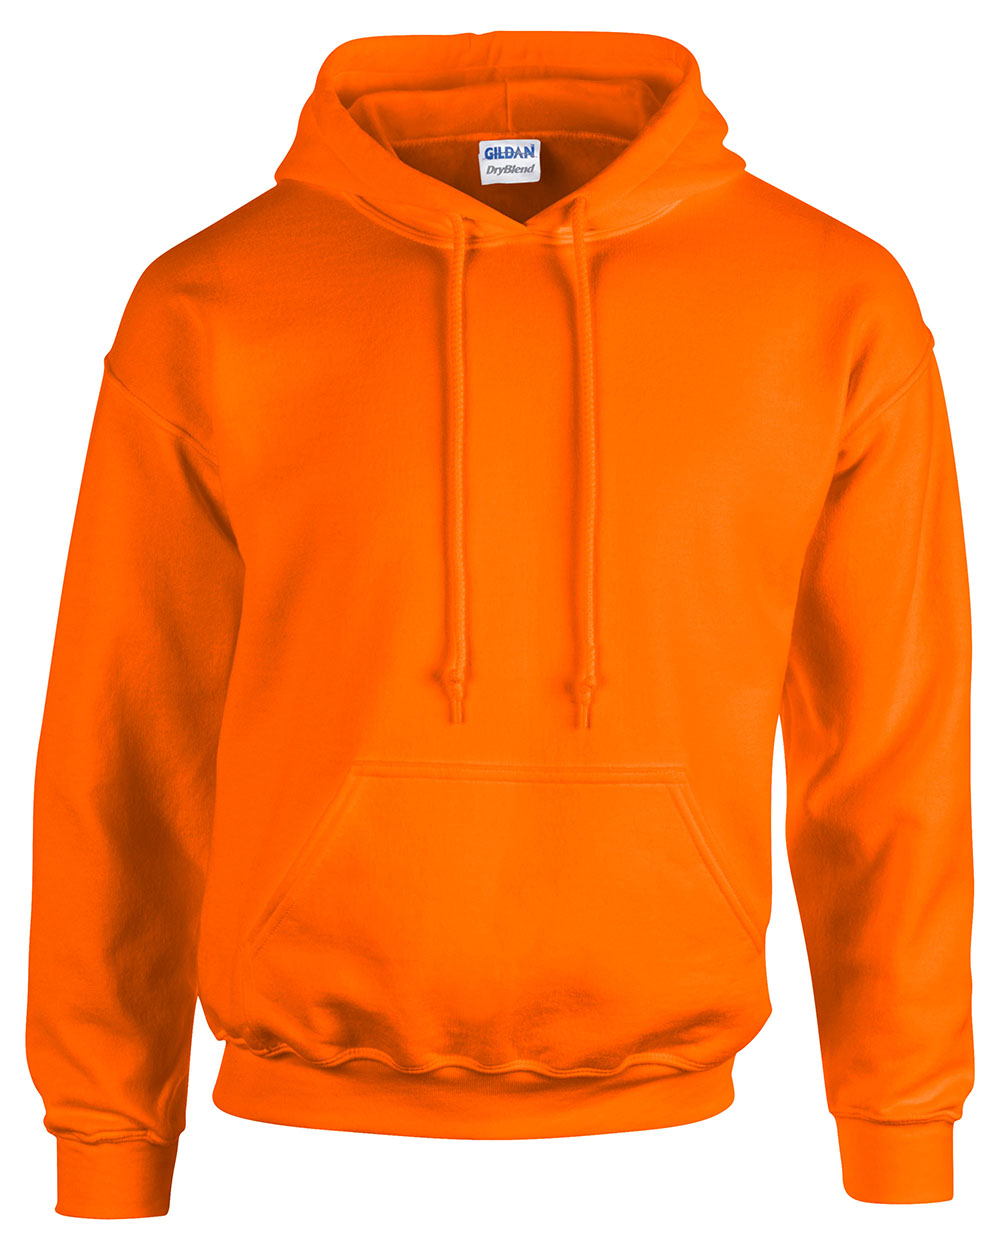 Gildan 18500 Safety Orange